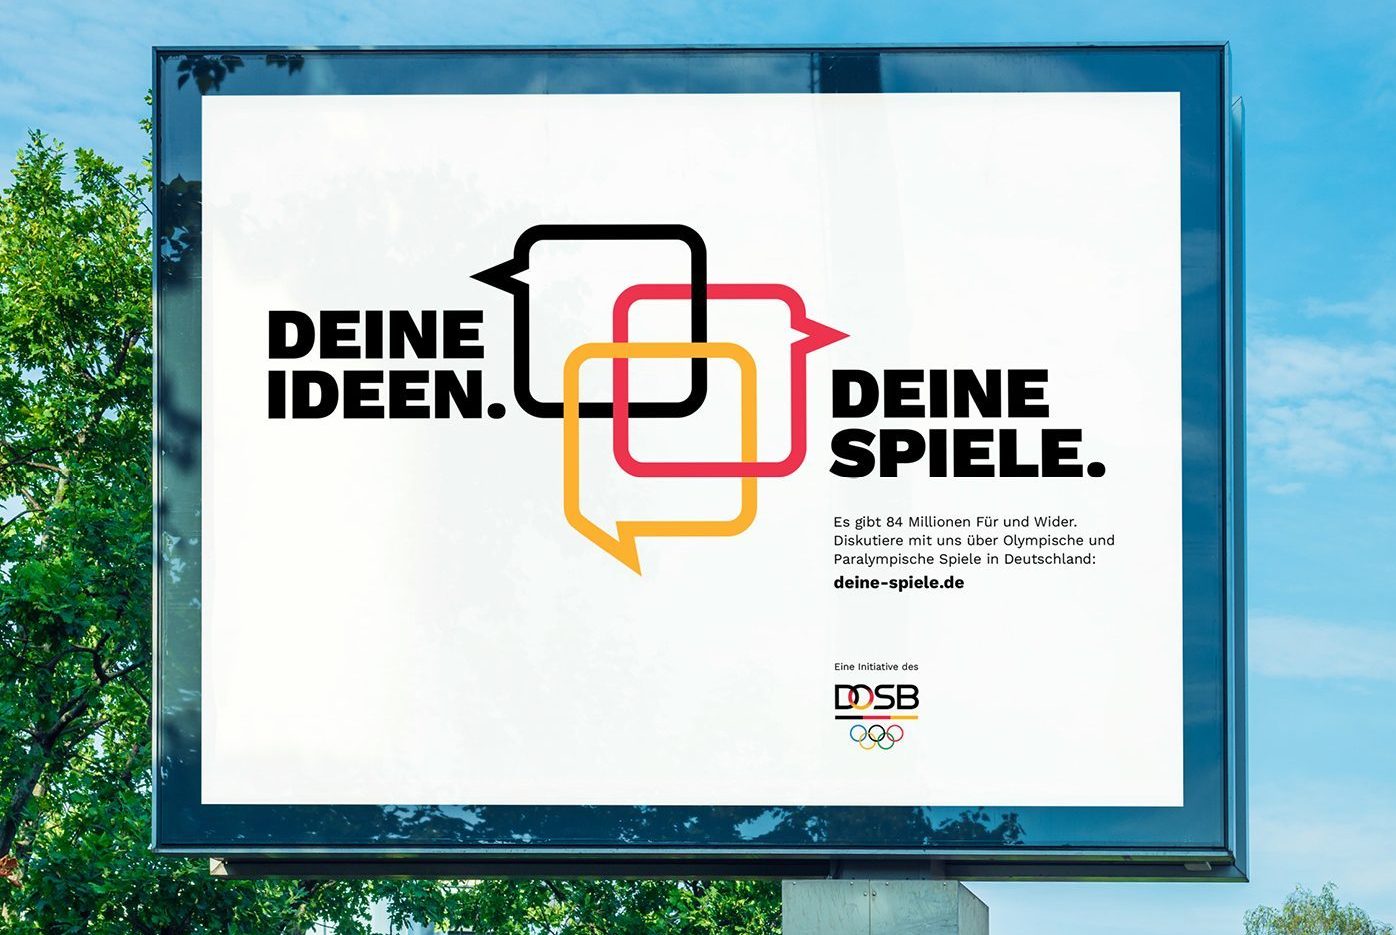 Deine Ideen.Deine Spiele.  Der DOSB möchte über die Dialogkampagne heraus-finden,  ob die Deutschen für Olympische Spiele und Paralympische Spiele in Deutschland sind.